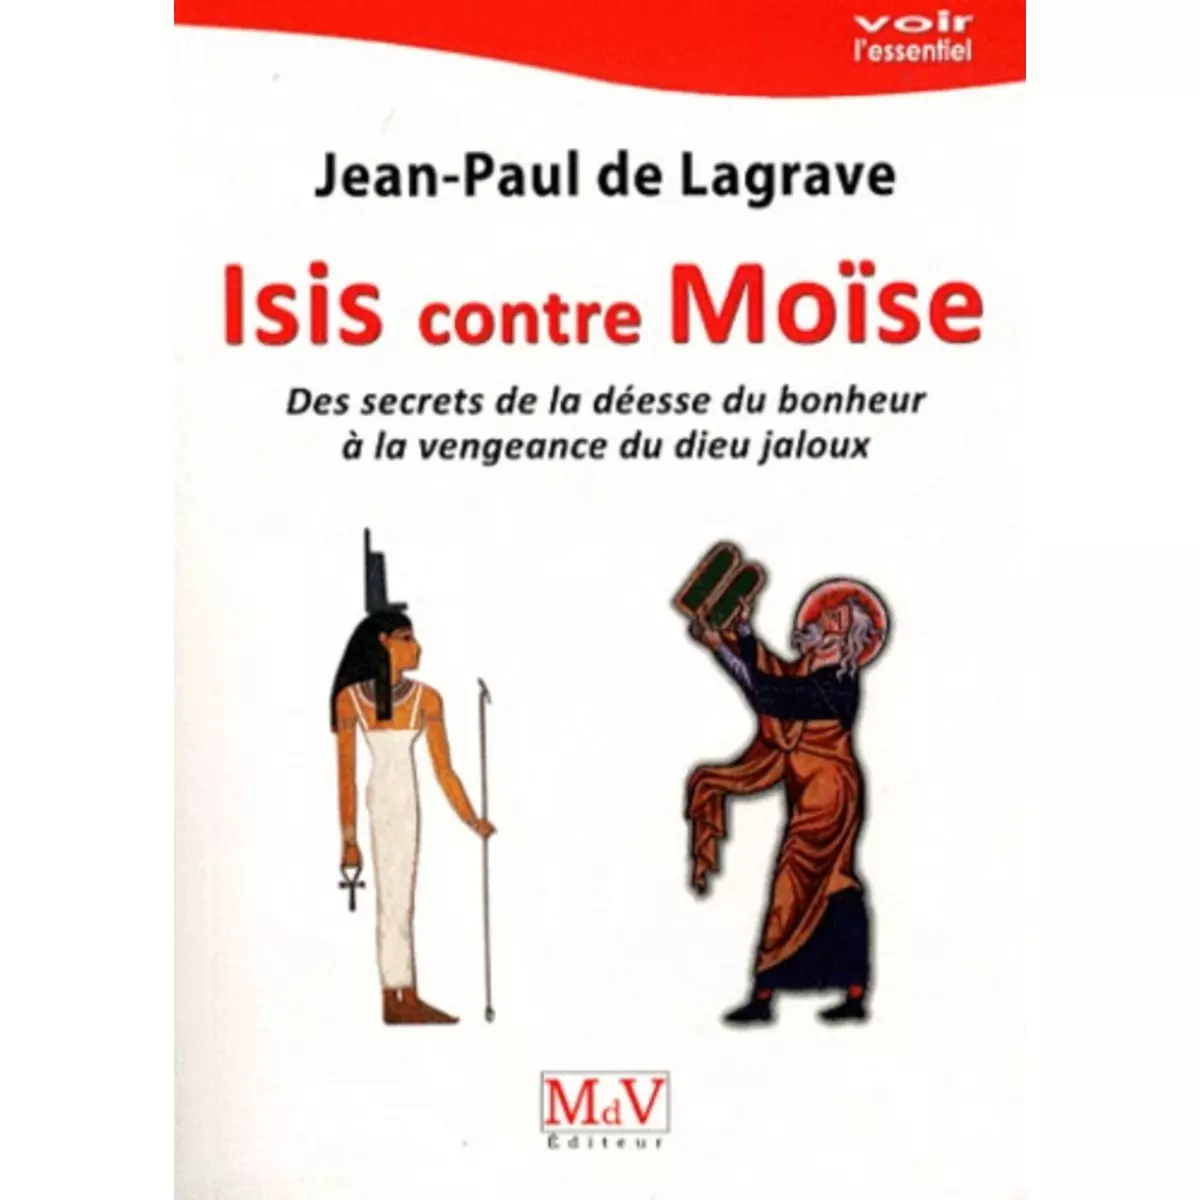  ISIS CONTRE MOISE. DES SECRETS DE LA DEESSE DU BONHEUR A LA VENGEANCE DU DIEU JALOUX, Lagrave Jean-Paul de